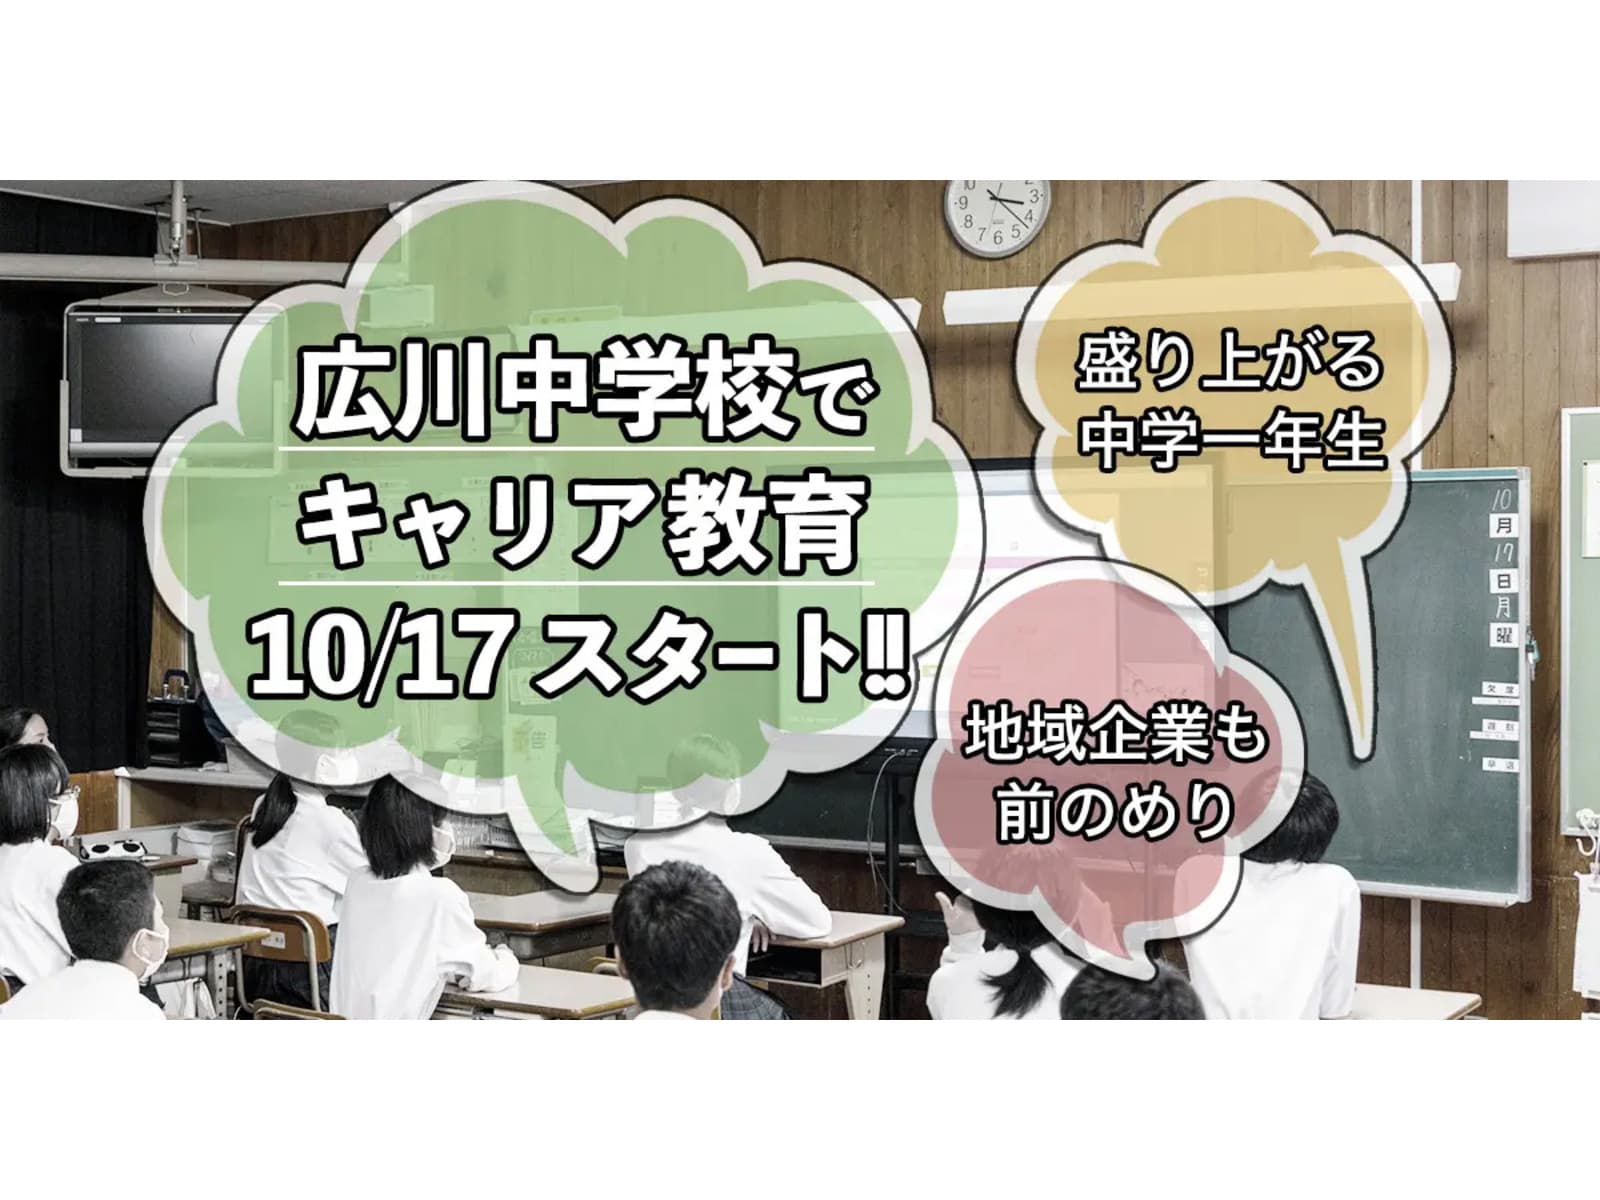 【 産学官連携 】10月17日より、広川中学校でキャリア教育始まりました。授業の様子をご紹介します。